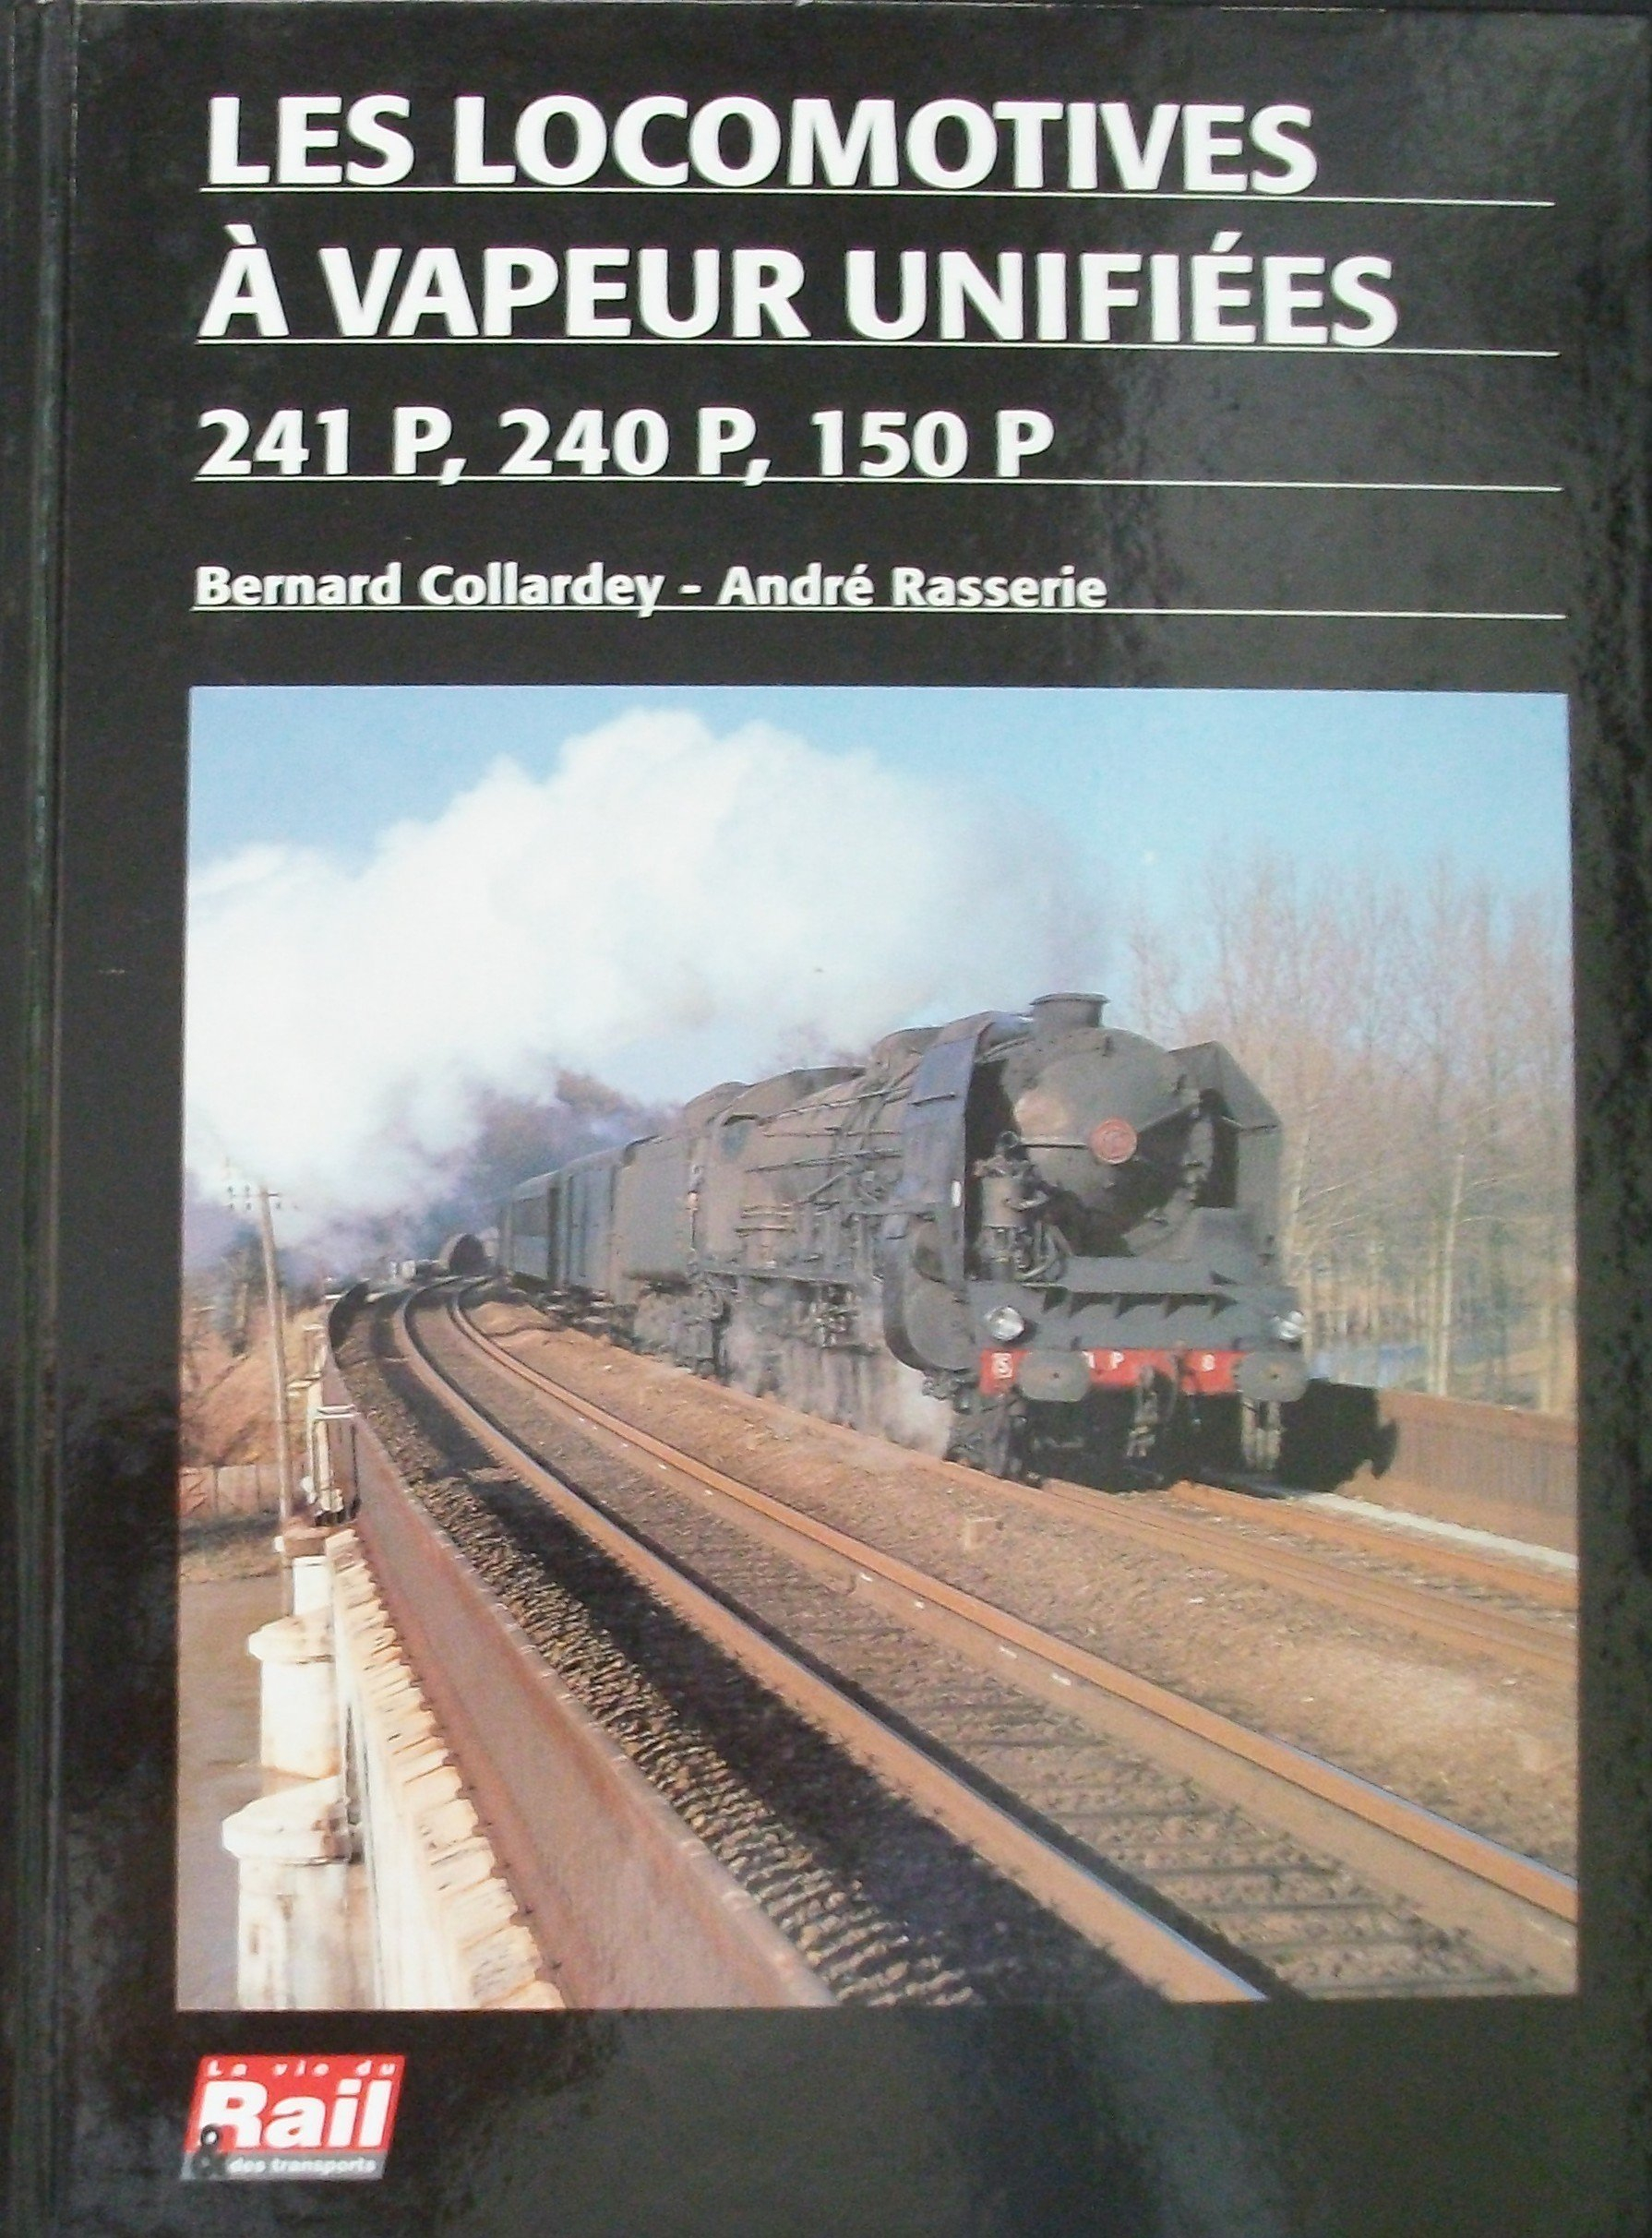 Locomotives a Vapeur Unifiees 241p 240p